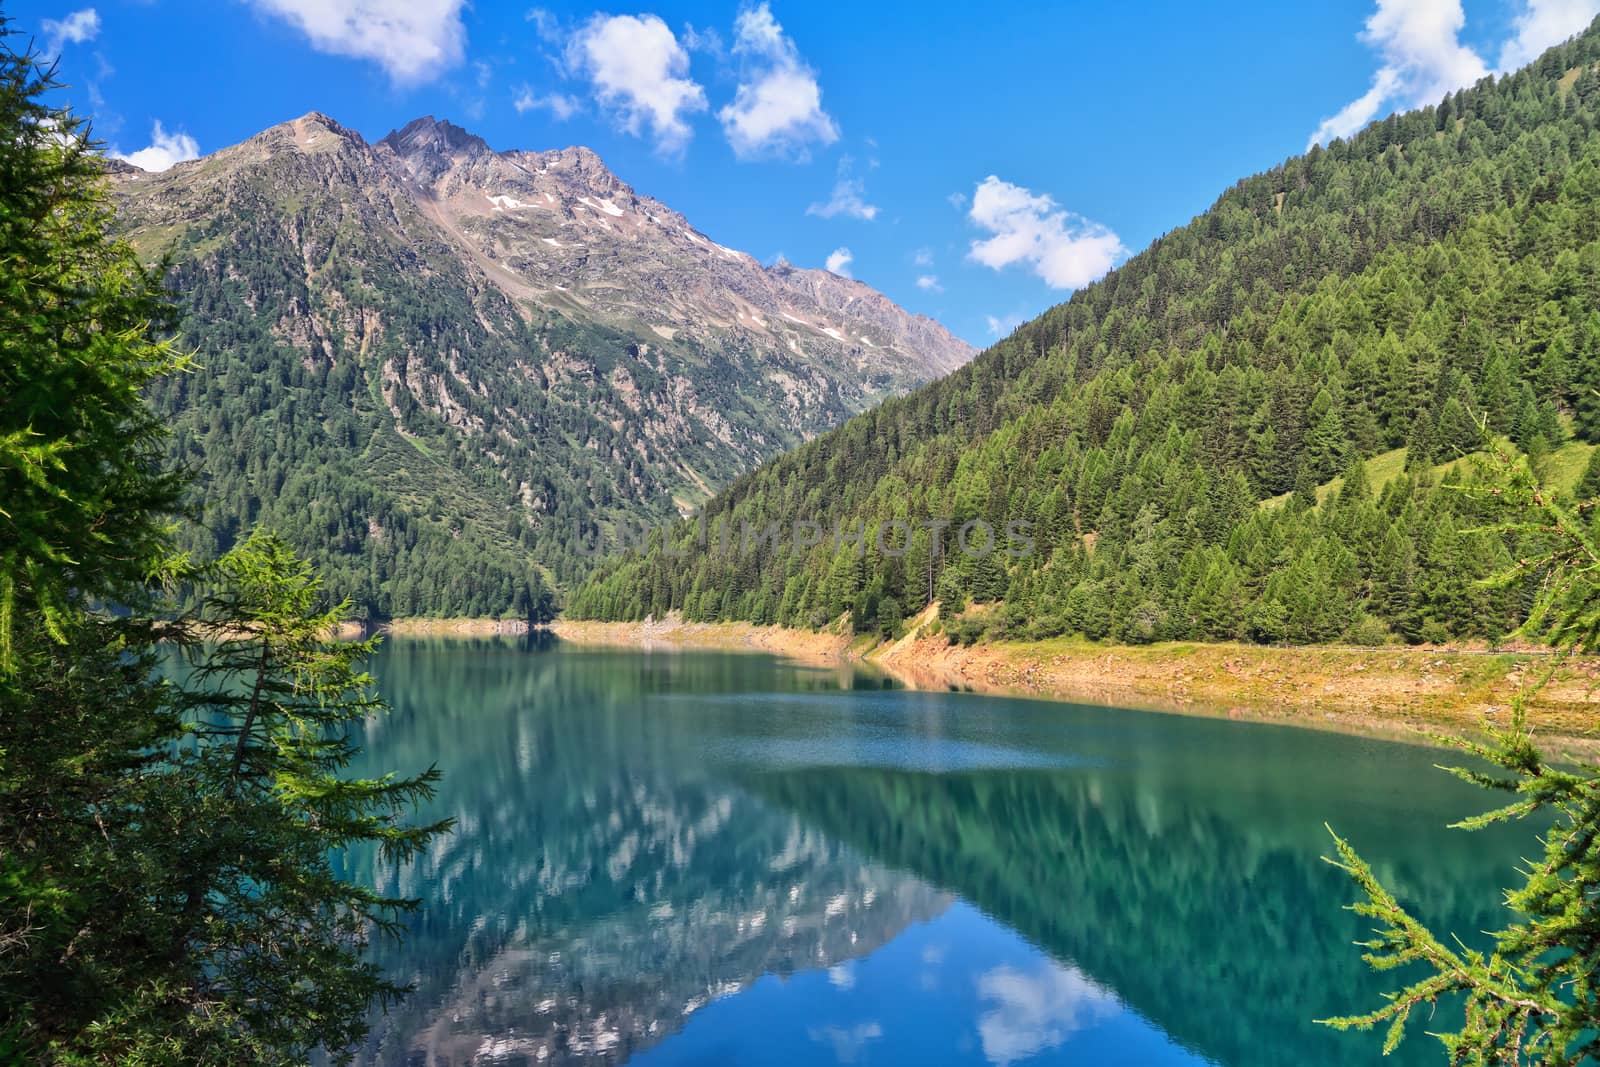 Trentino - Pian Palu lake by antonioscarpi